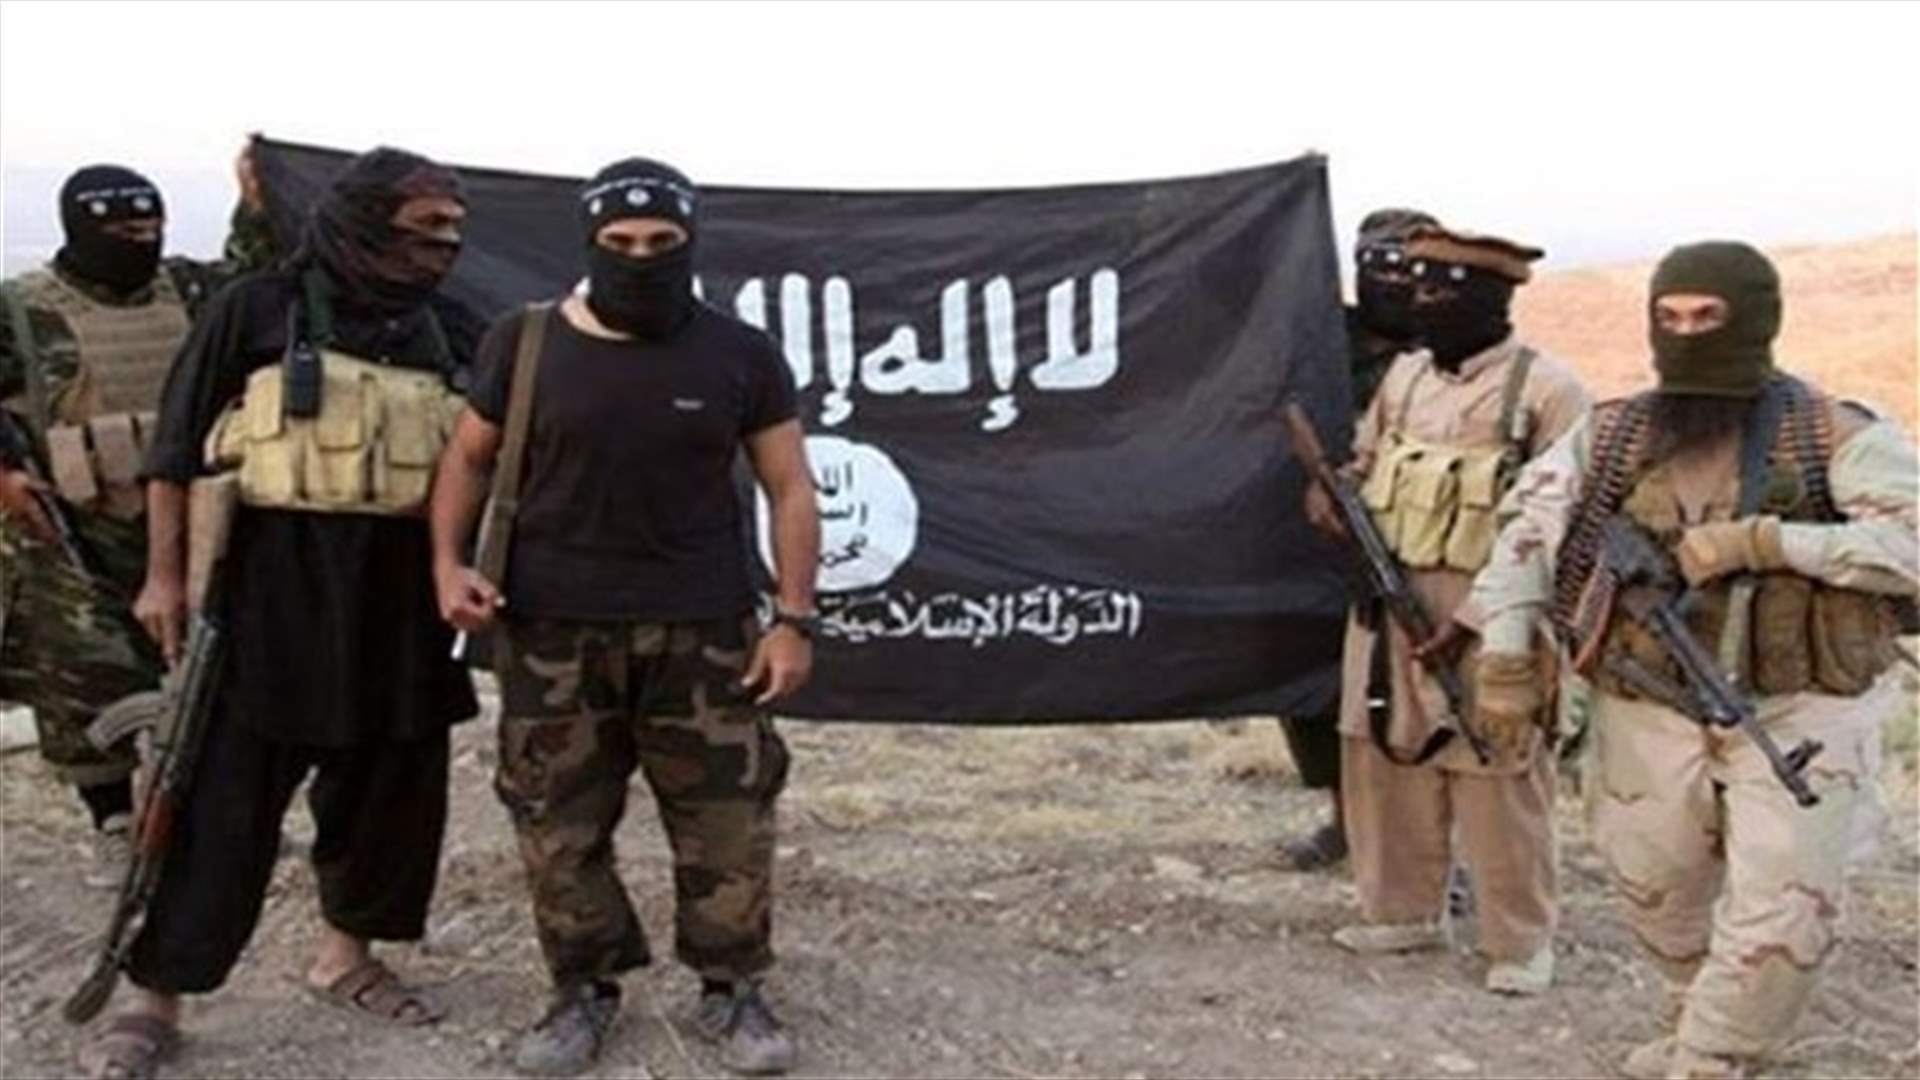 داعش نشر صورا تظهر قطع رأس المخطوف يونس الحجيري